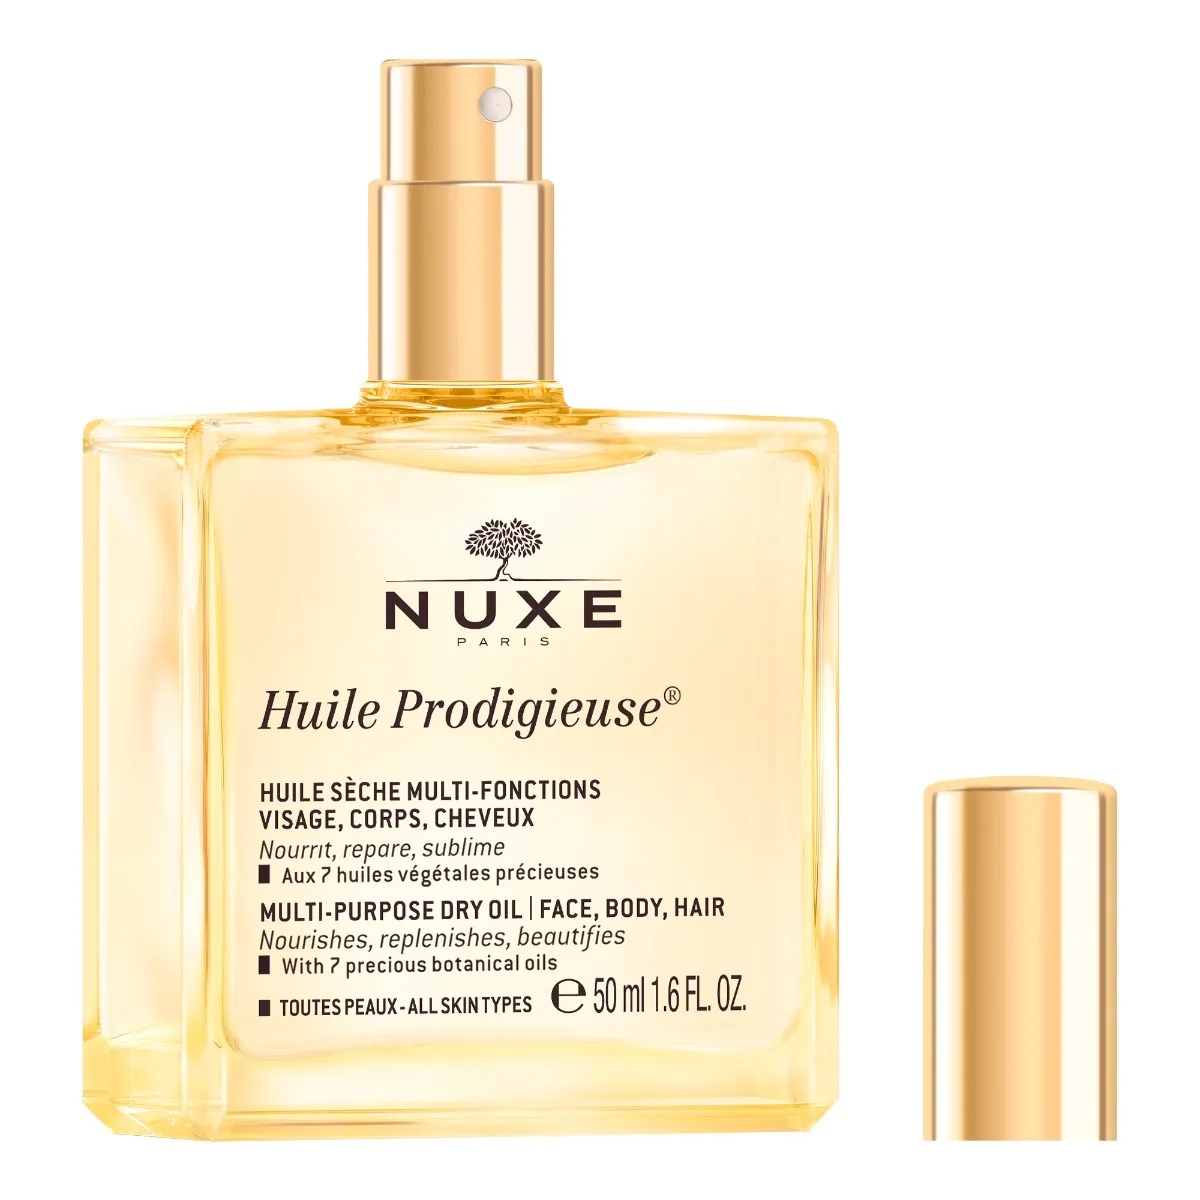 Nuxe Huile Prodigieuse Suchy olejek do ciała, twarzy i włosów, 50 ml 